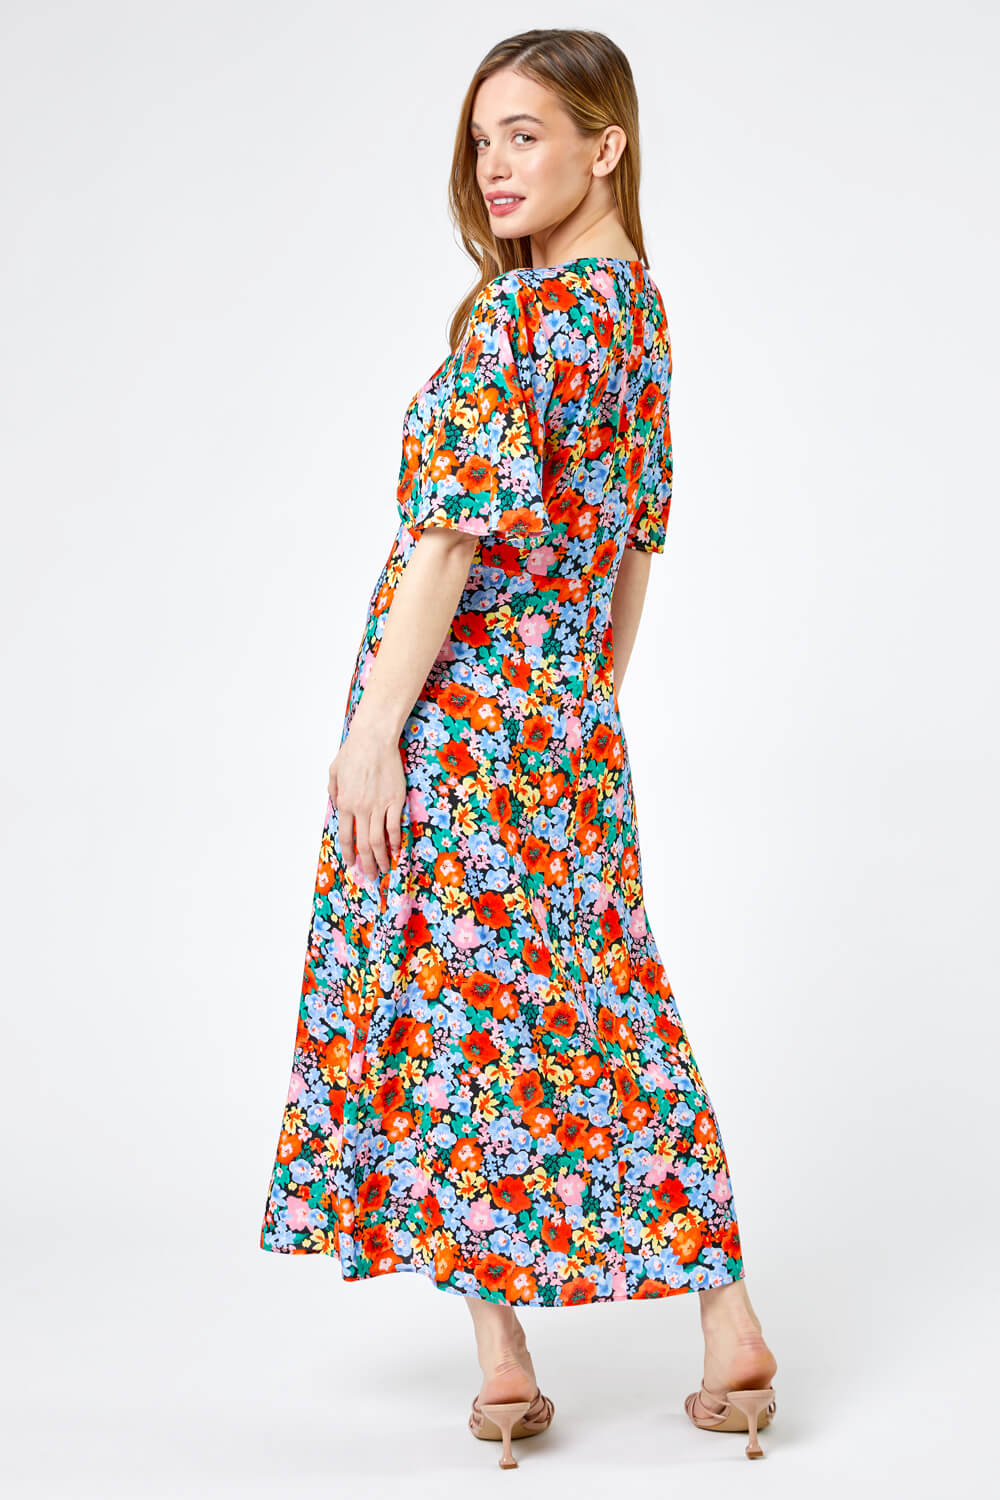 ORANGE Petite Floral Button Through Midi Dress, Image 2 of 5